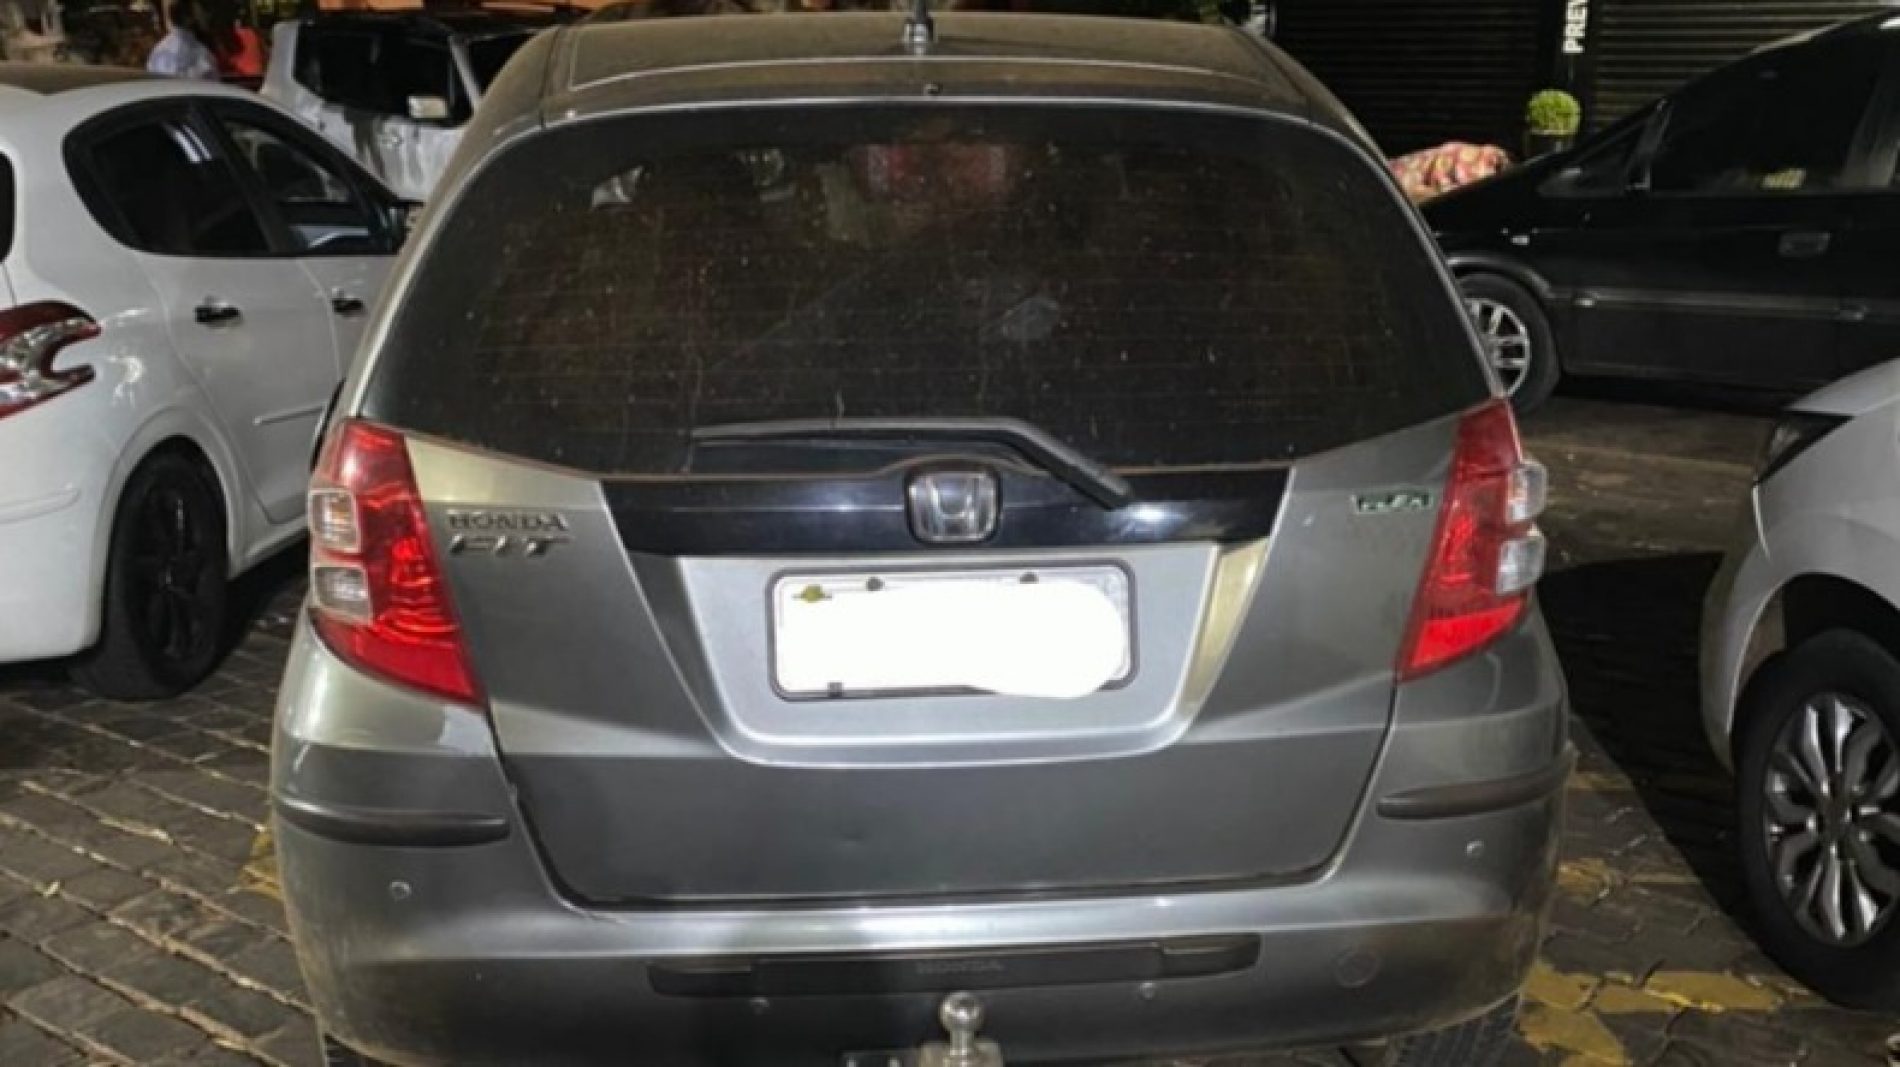 REGIÃO: Baep detém dupla suspeita de roubar carros